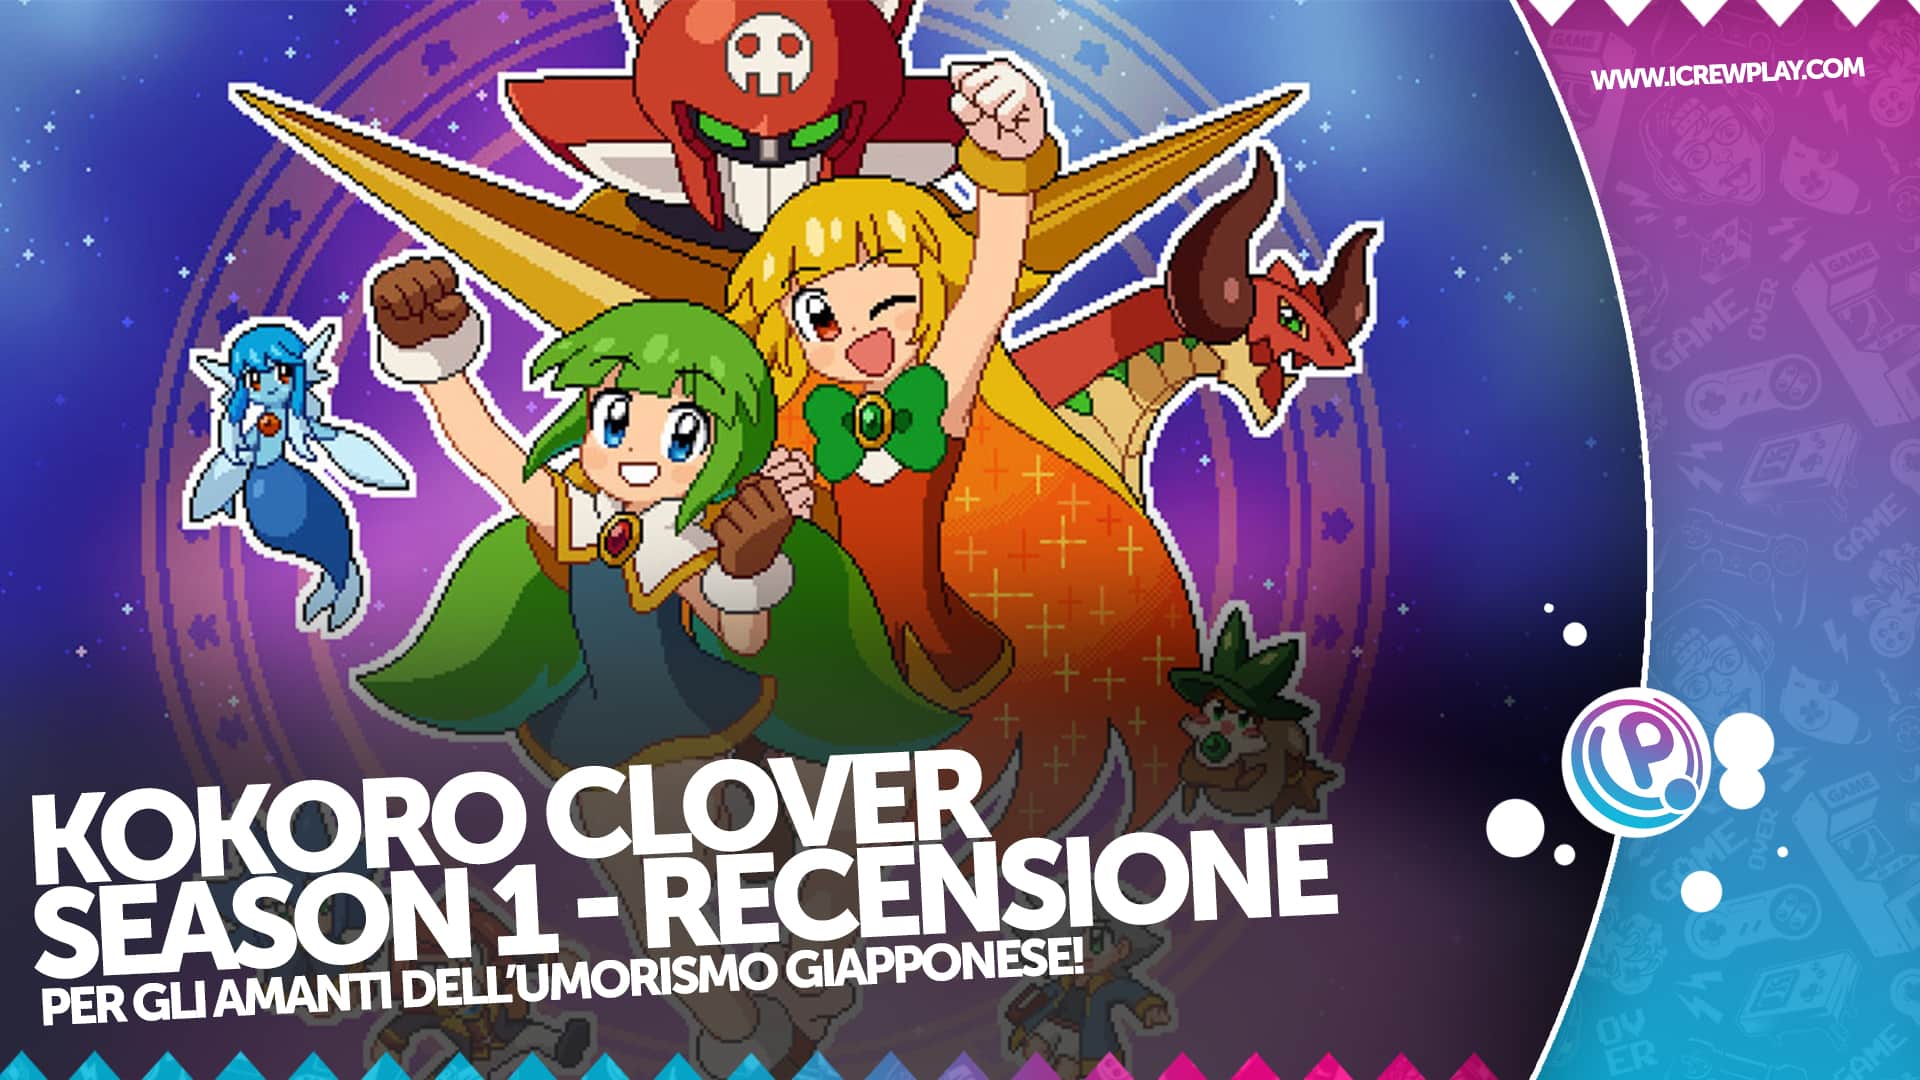 Kokoro Clover Season 1 - Recensione per Nintendo Switch 2